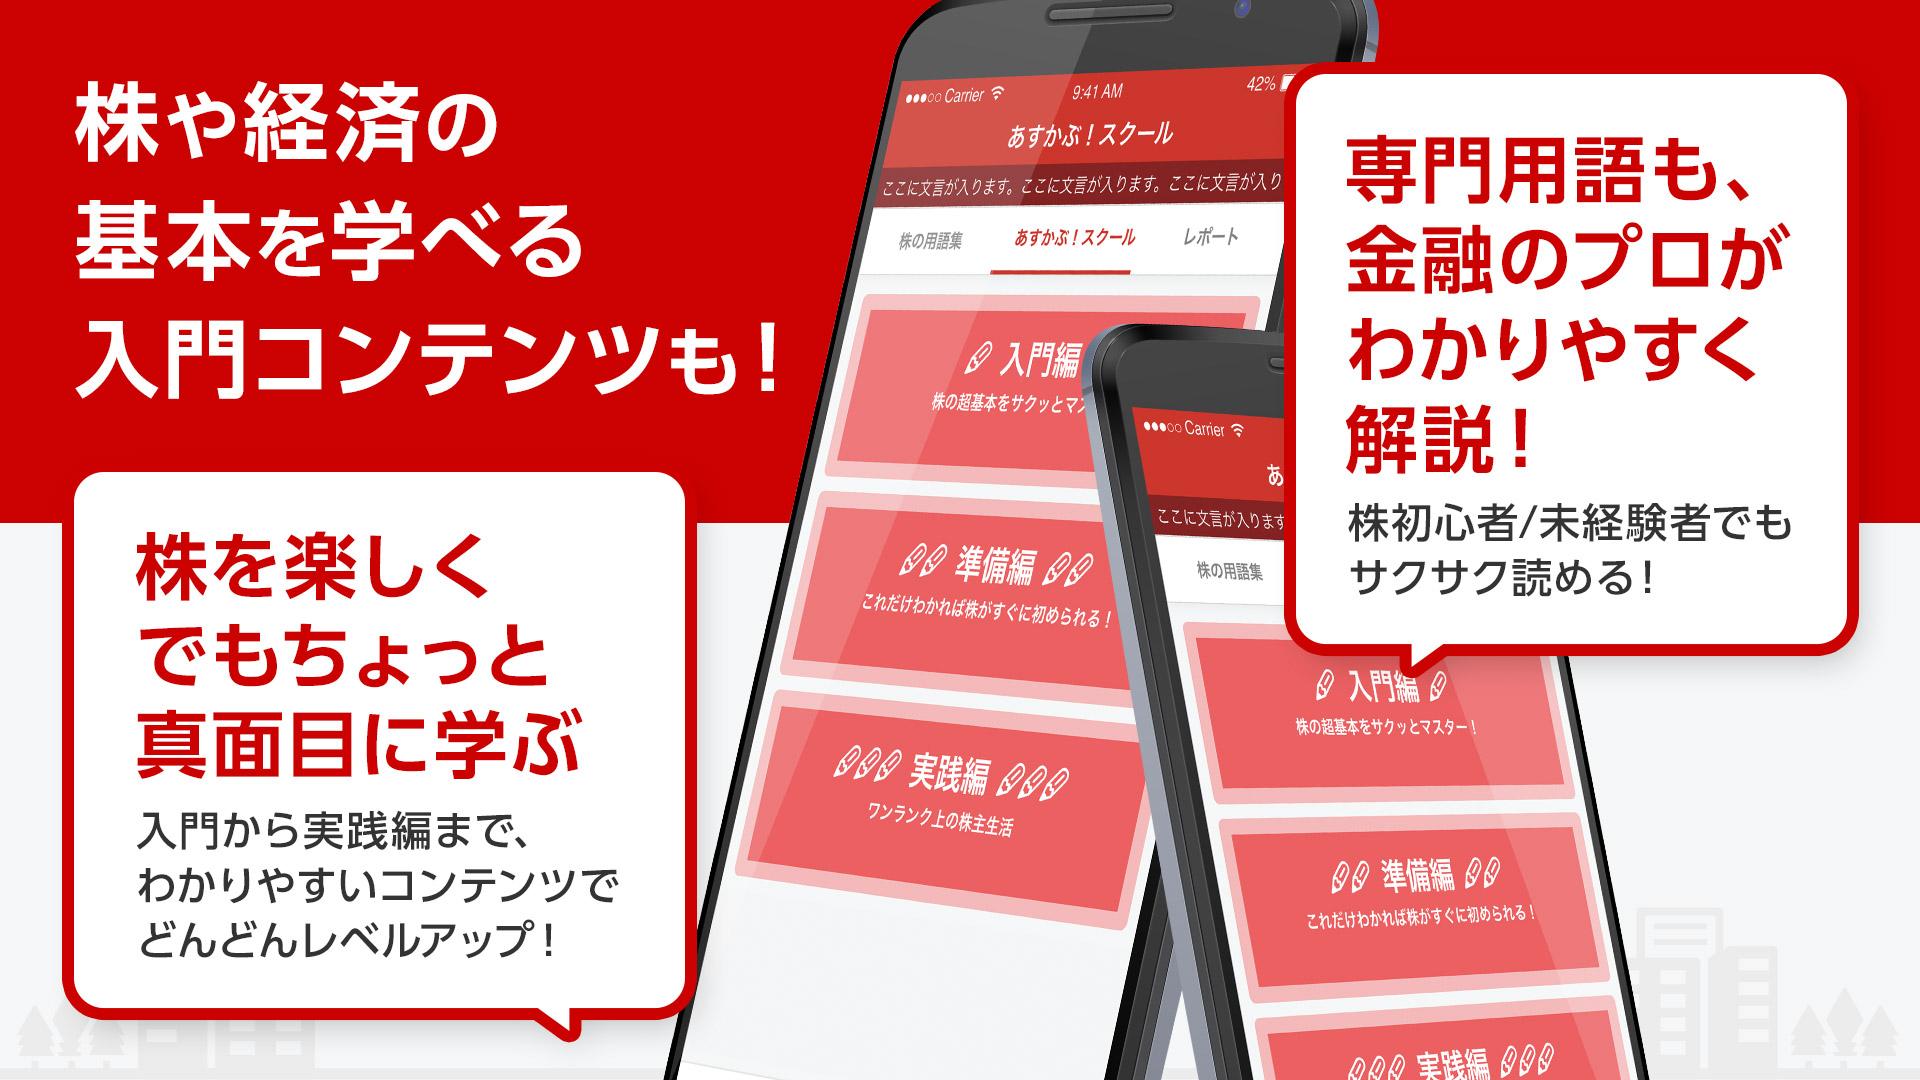 Android application 株アプリあすかぶ！ screenshort